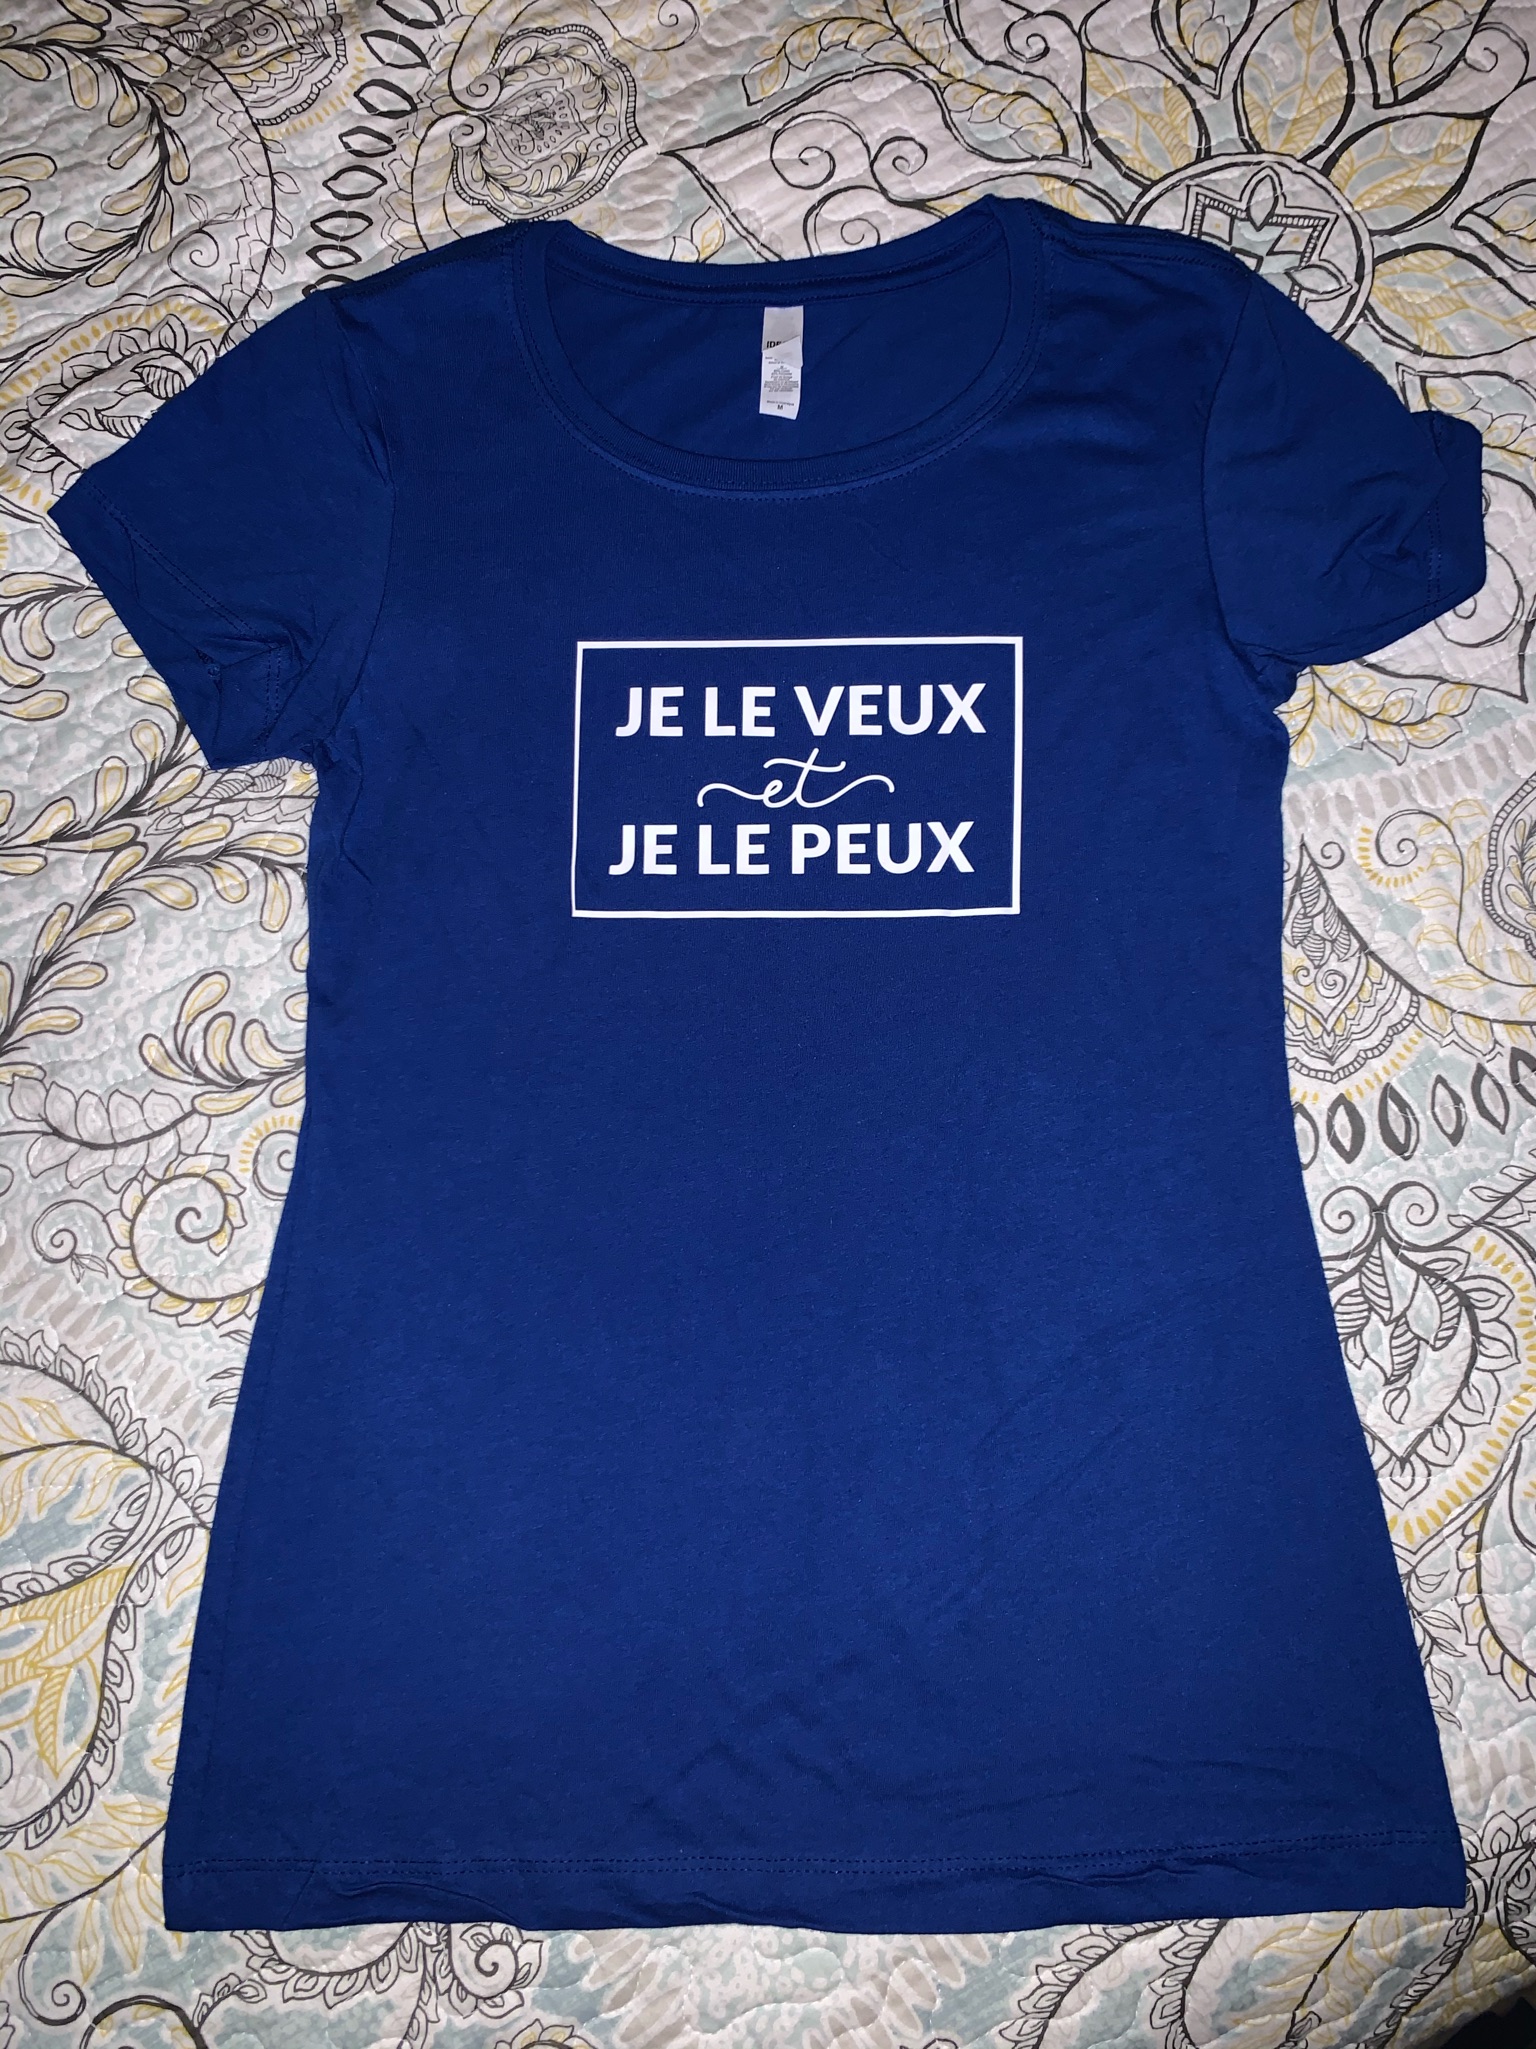 SHIRT003 – Je Le Veux et Je Le Peux Shirt